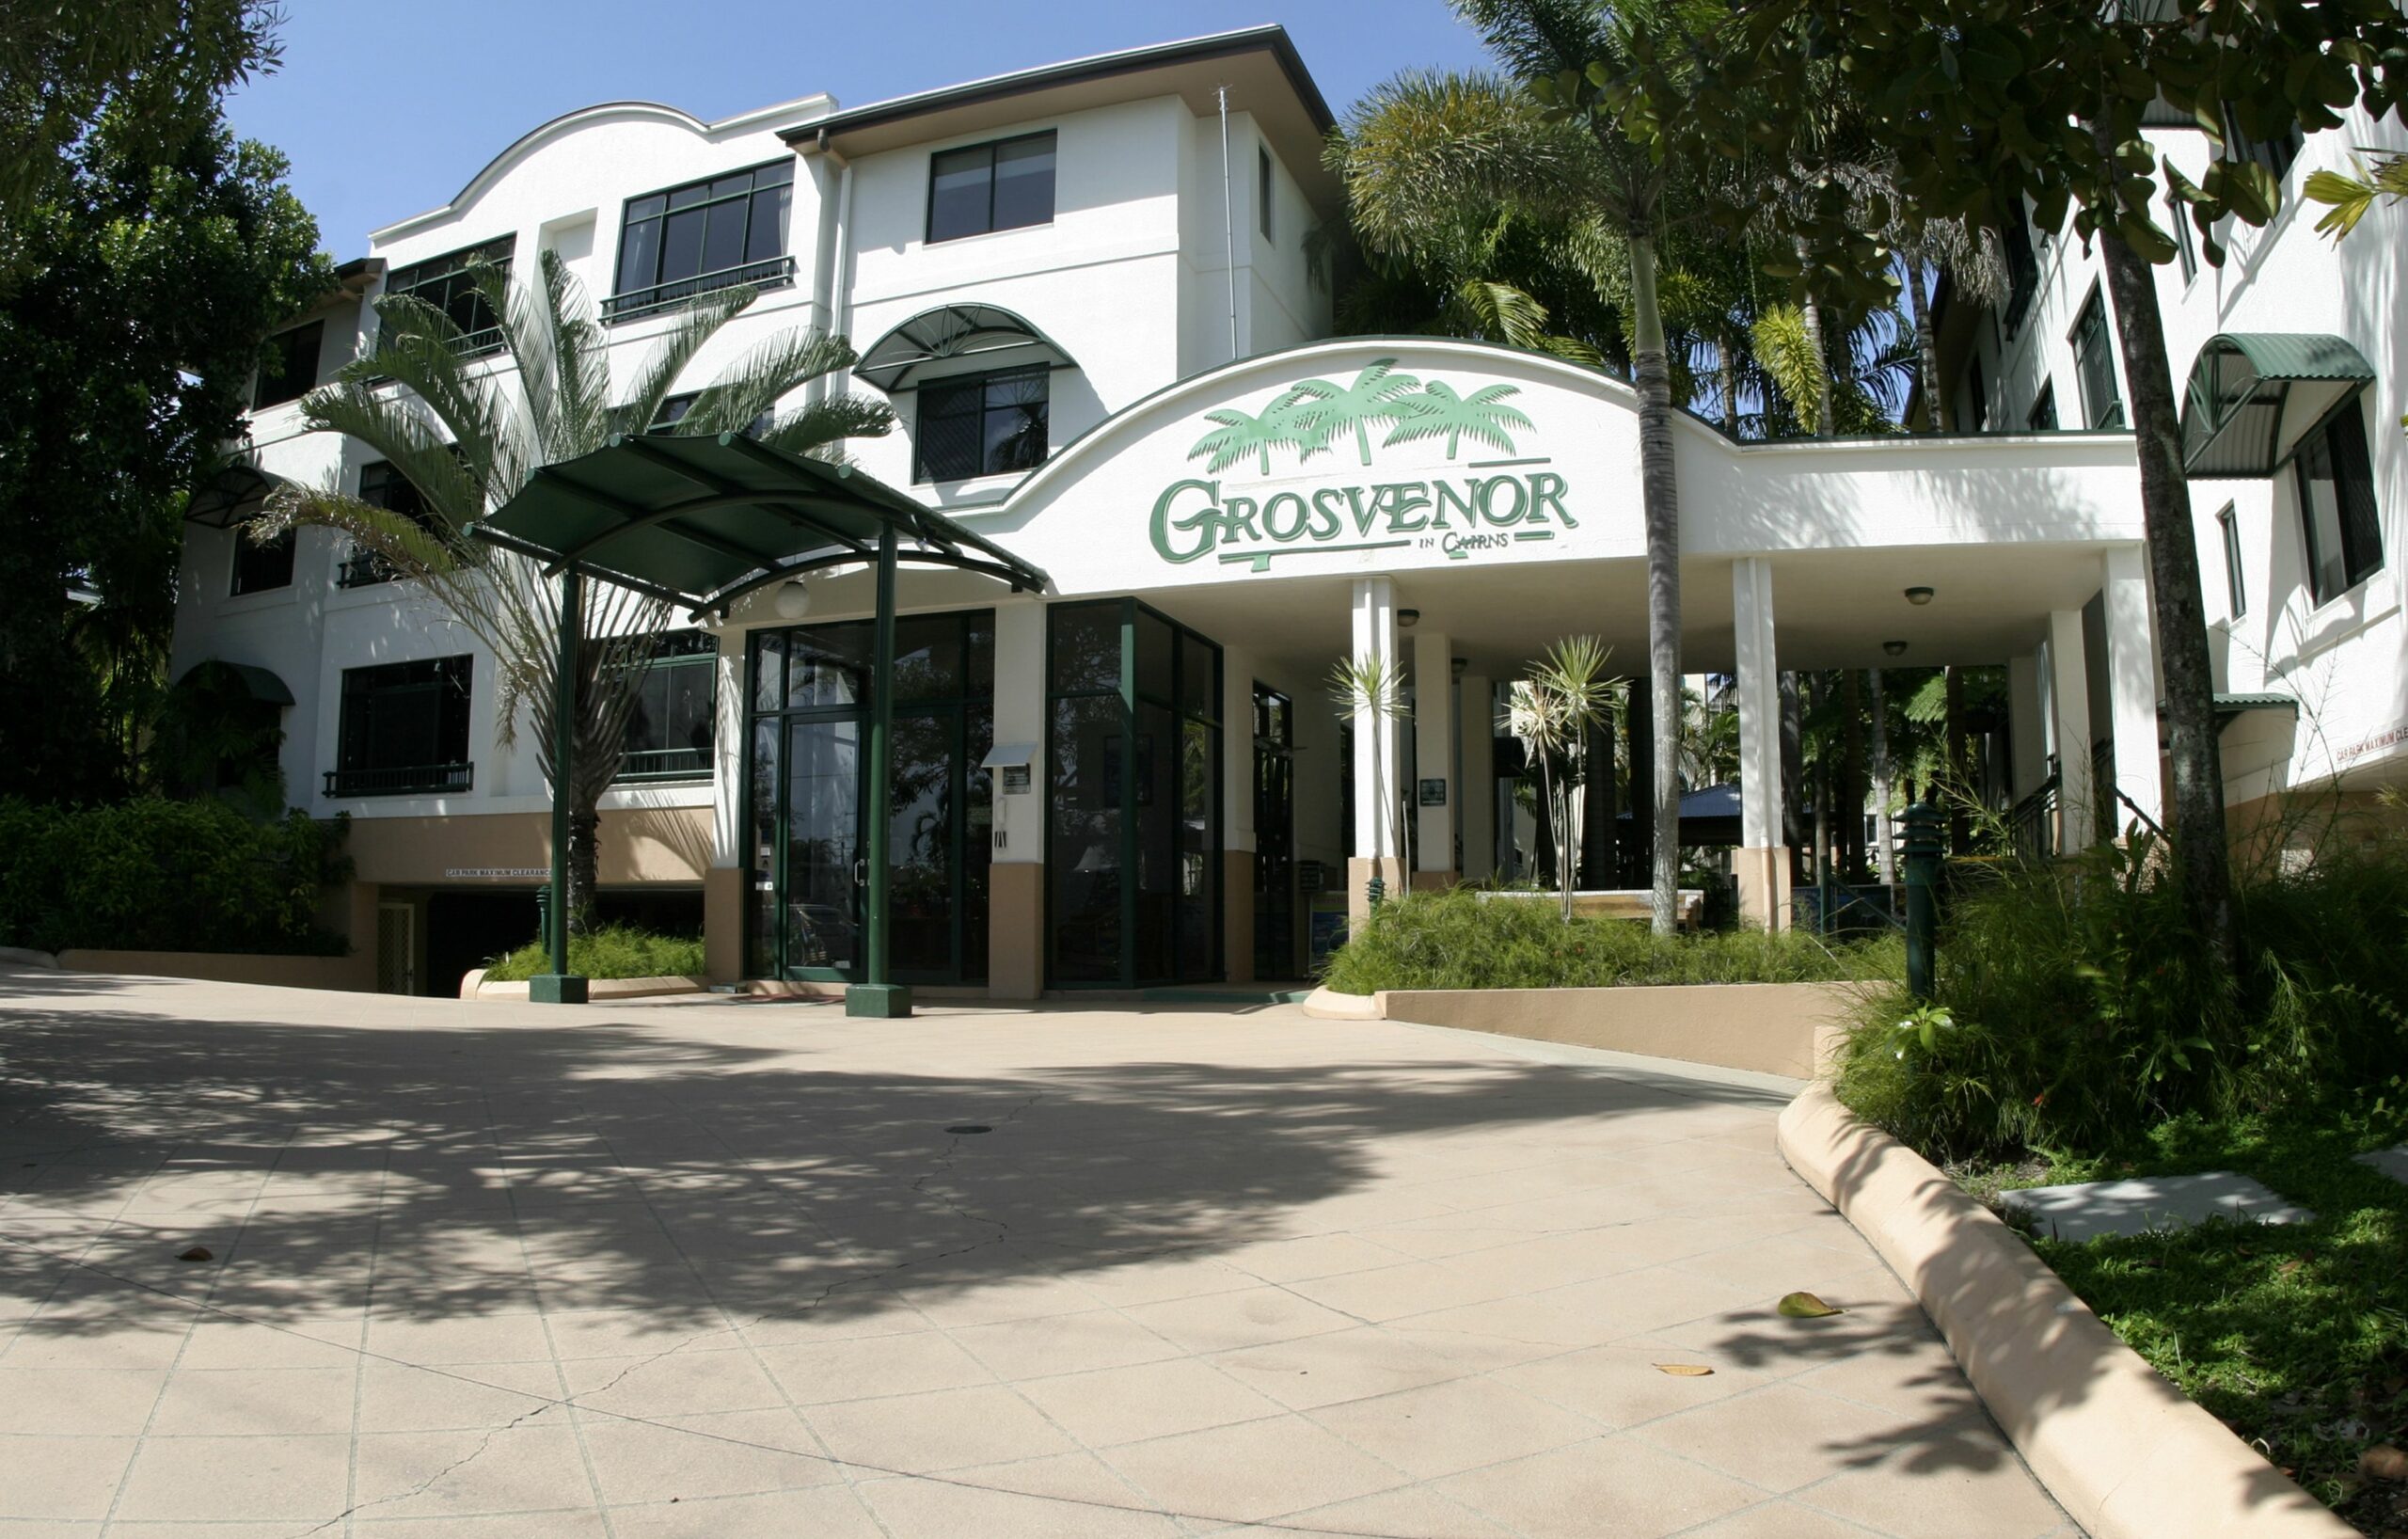 Grosvenor in Cairns